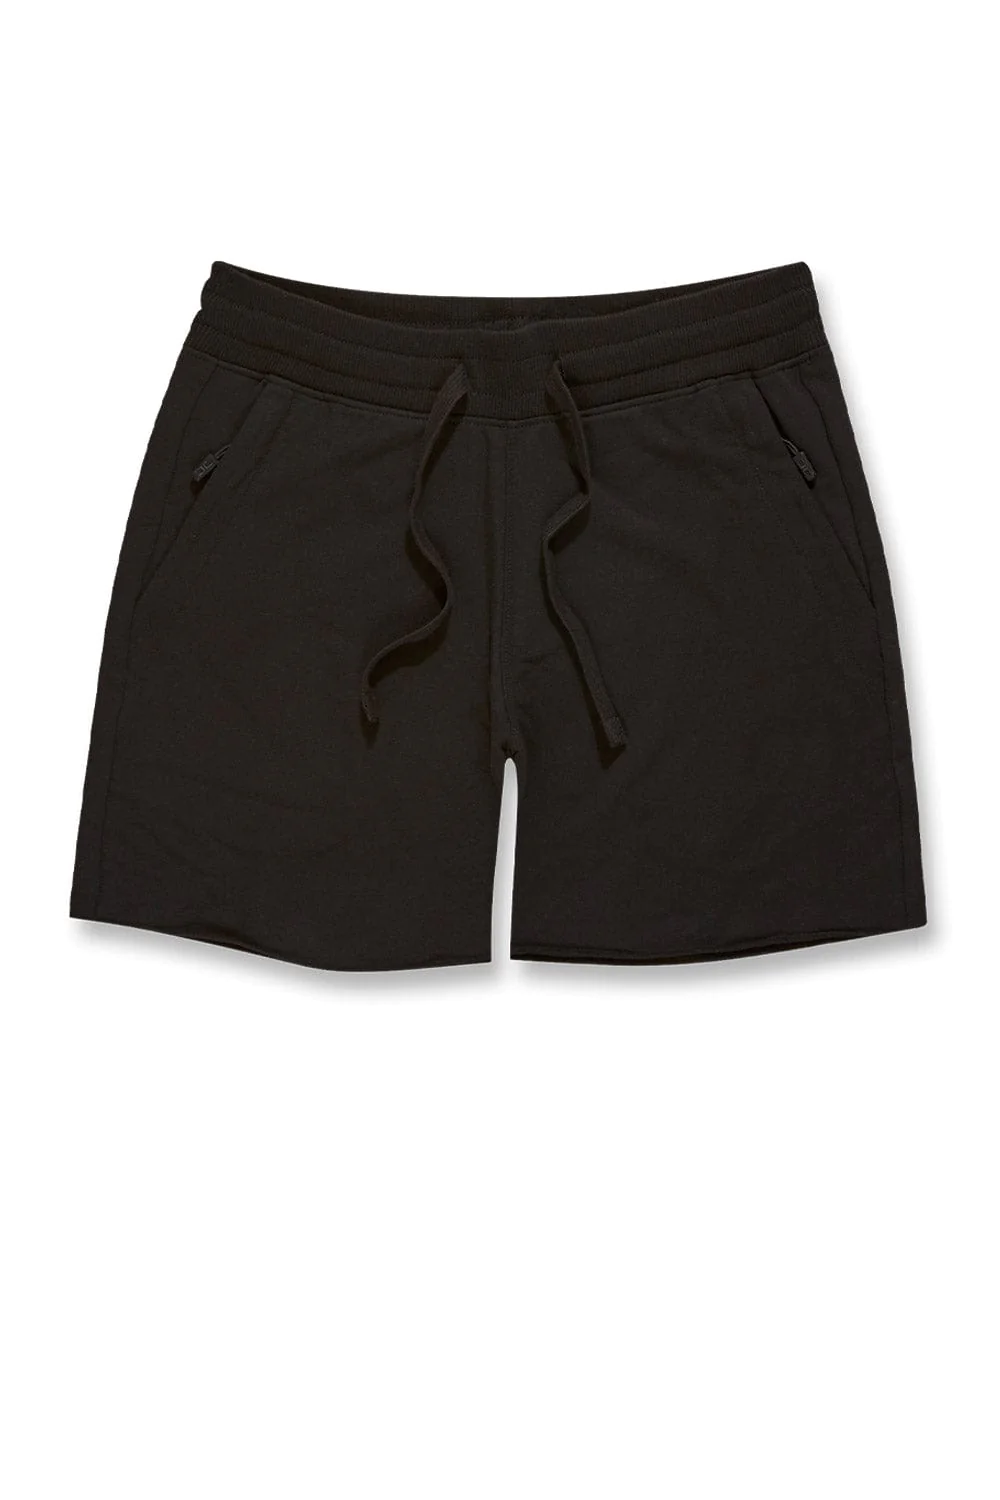 jordan-craig-mens-summer-breeze-knit-shorts-8451s-black